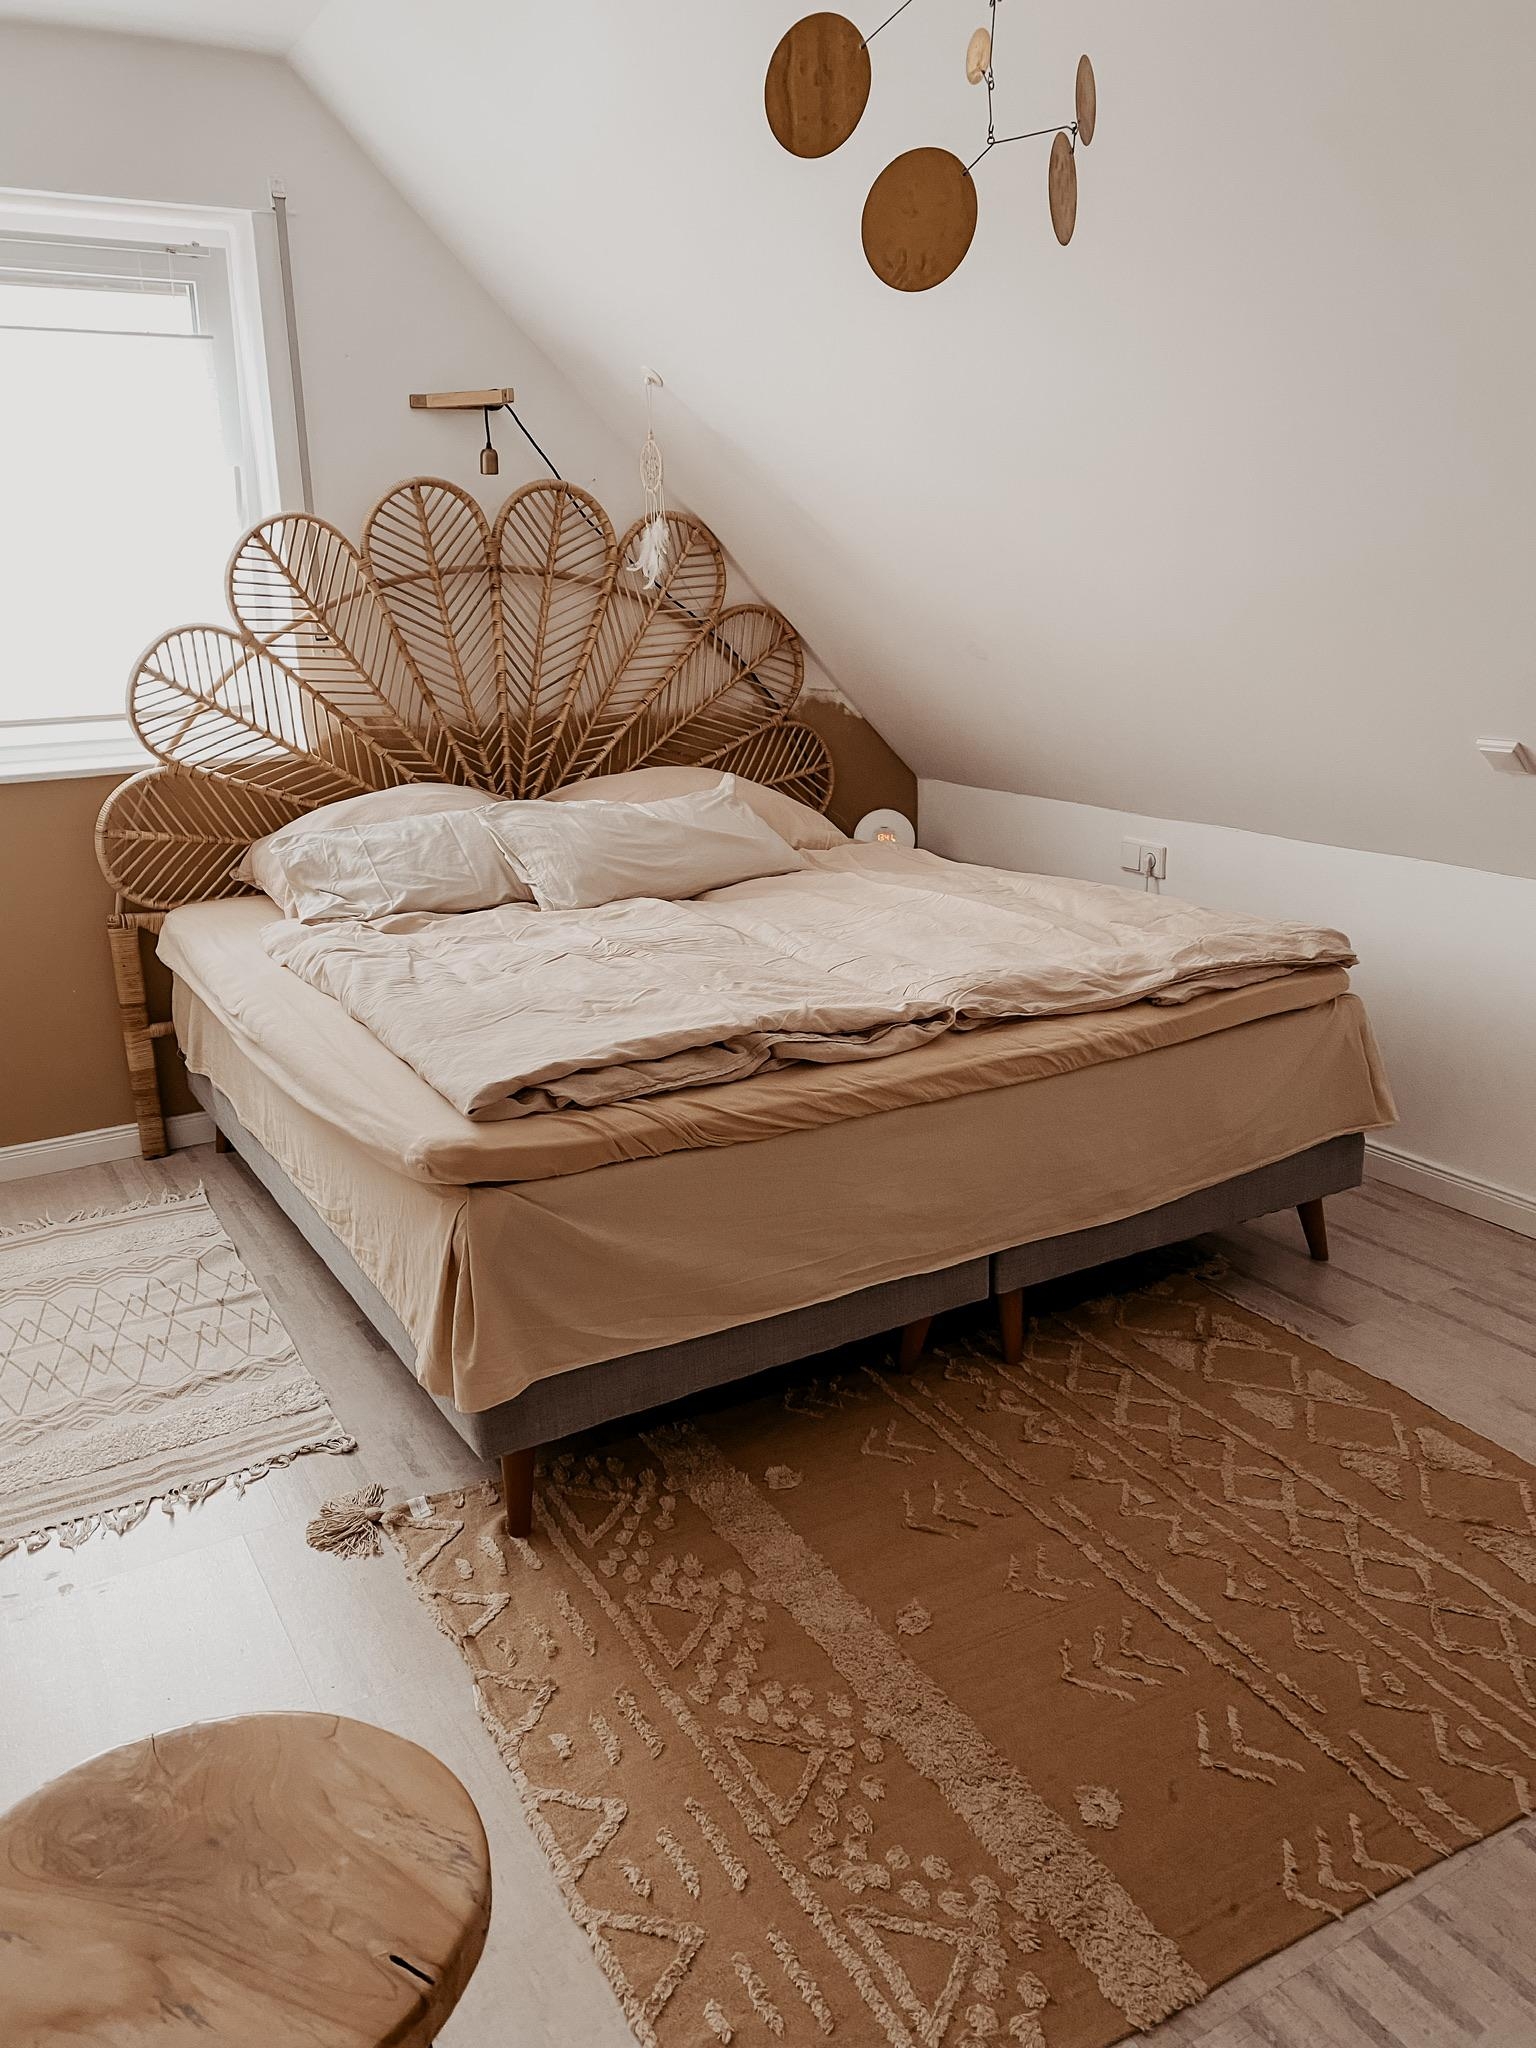 Unser neues Schlafzimmer verträgt noch etwas Farbe, oder? Kalkitir? 
#schlafzimmer #rattan #rattankopfteil #messing